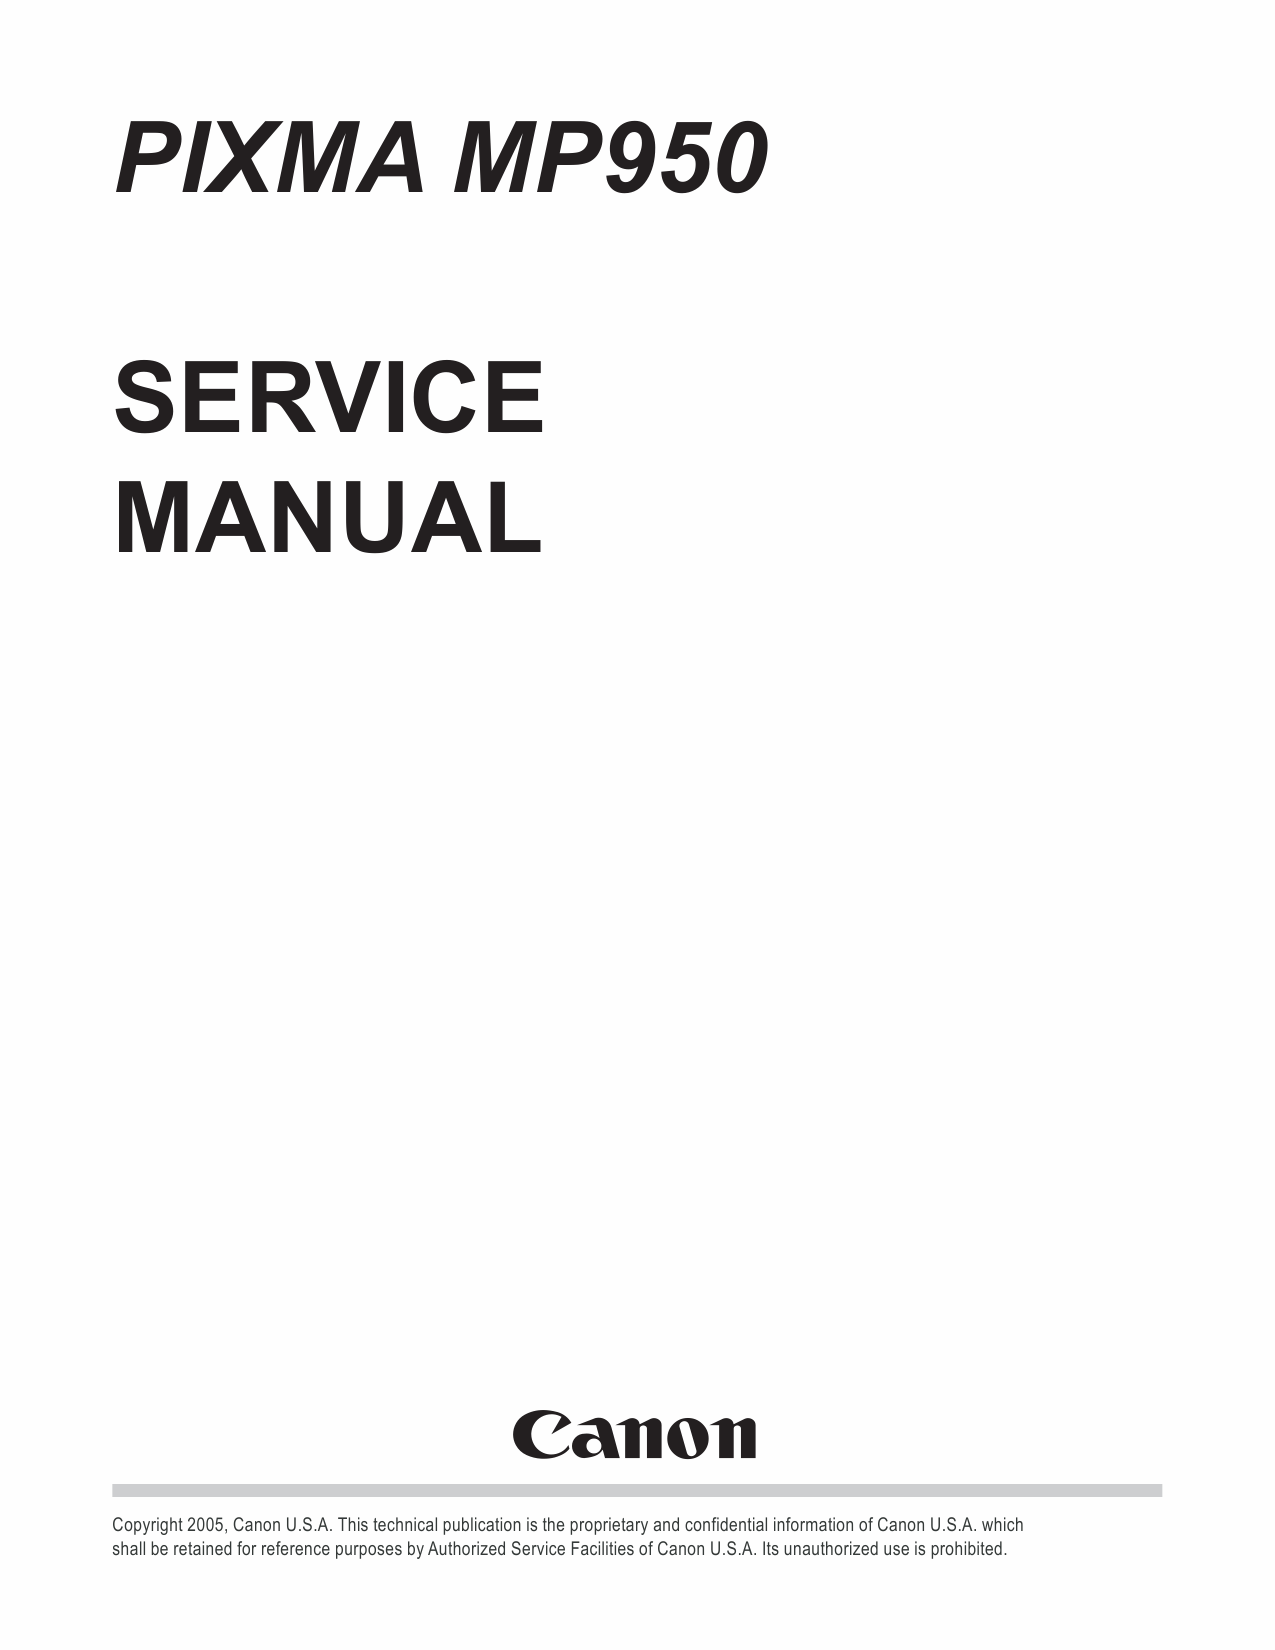 Canon PIXMA MP950 Service Manual-1